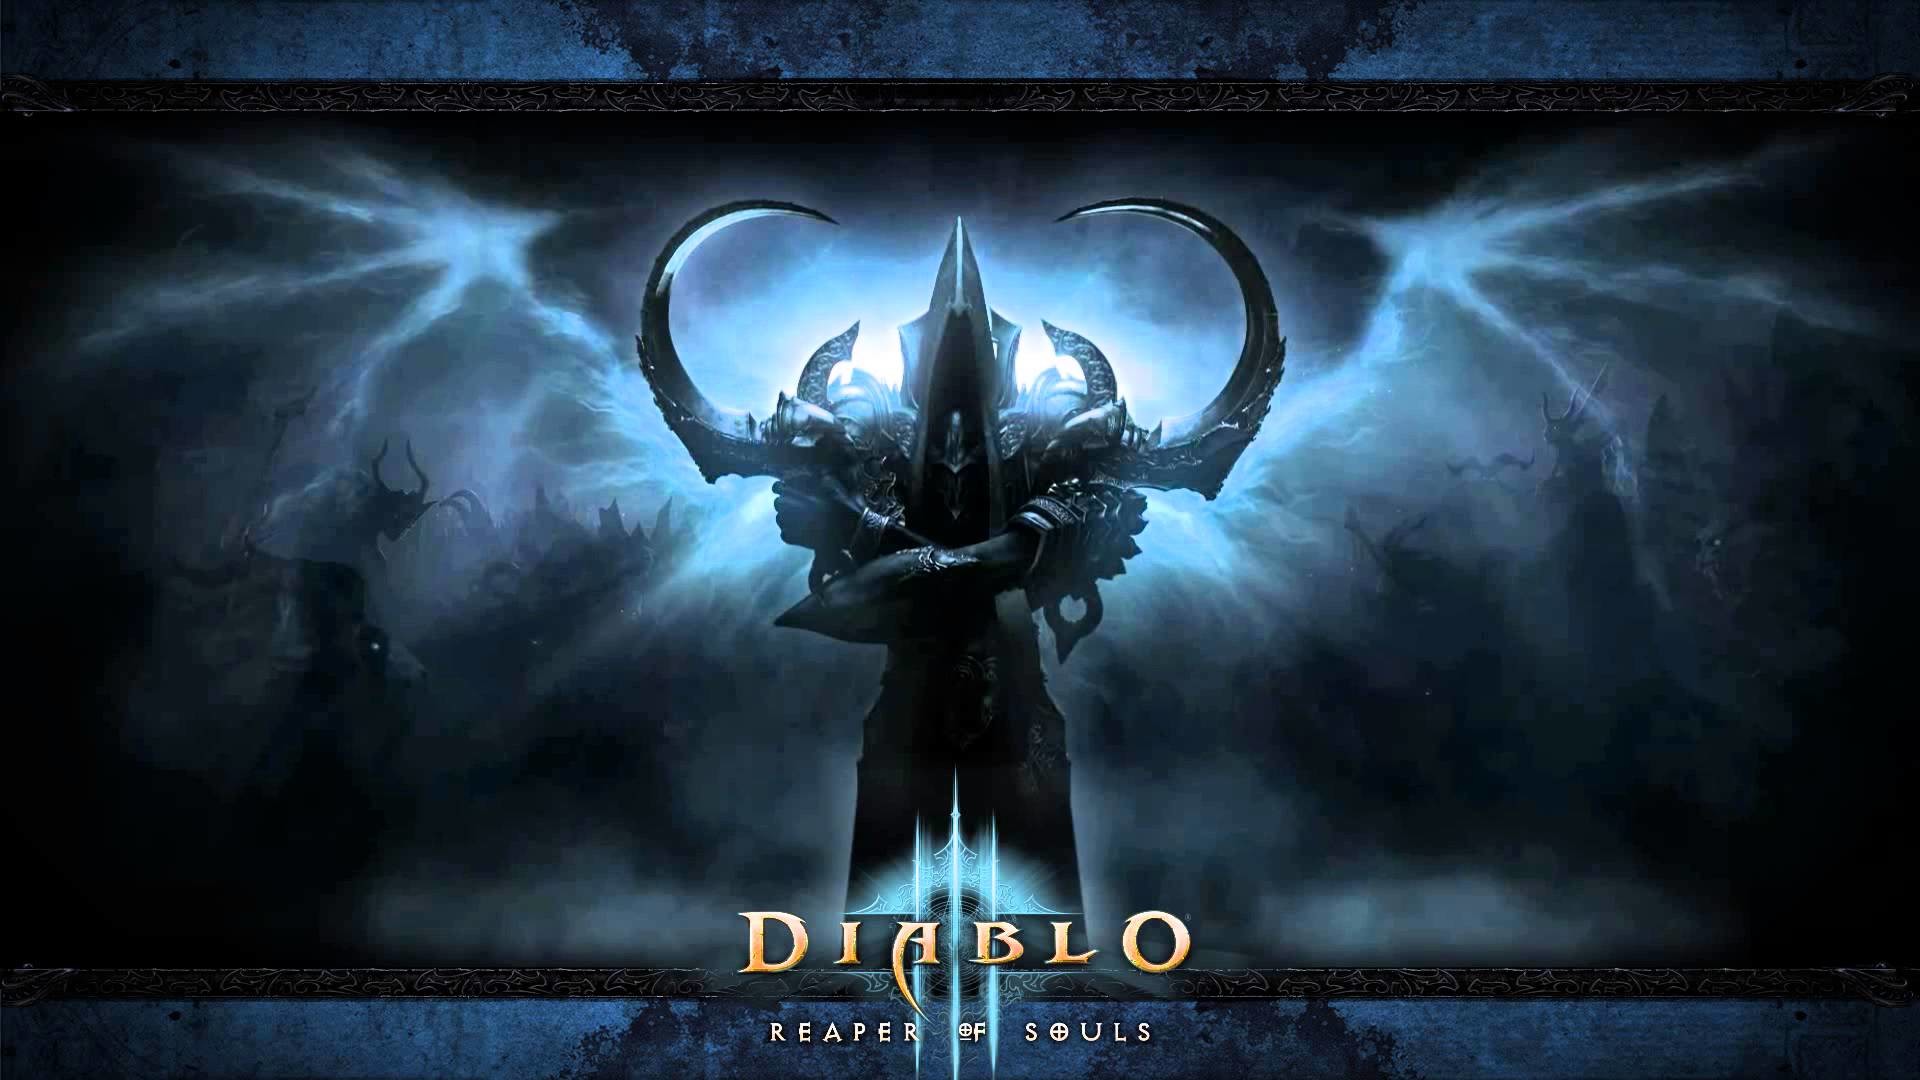 1920x1080 Diablo 3 - Reaper of Souls - Animated Wallpaper HD - YouTube